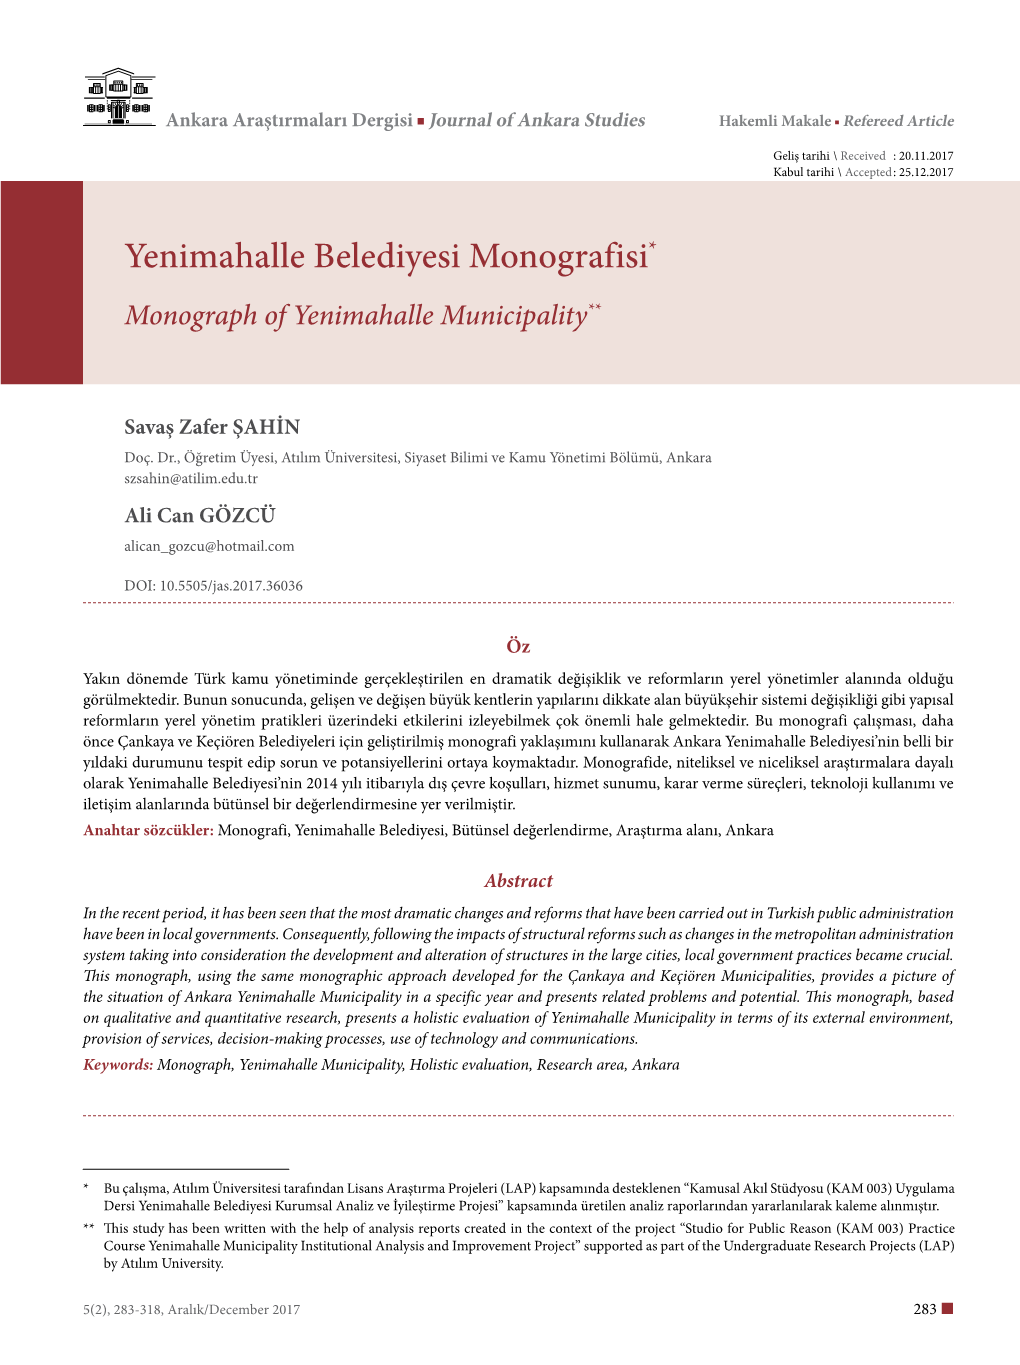 Yenimahalle Belediyesi Monografisi* Monograph of Yenimahalle Municipality**